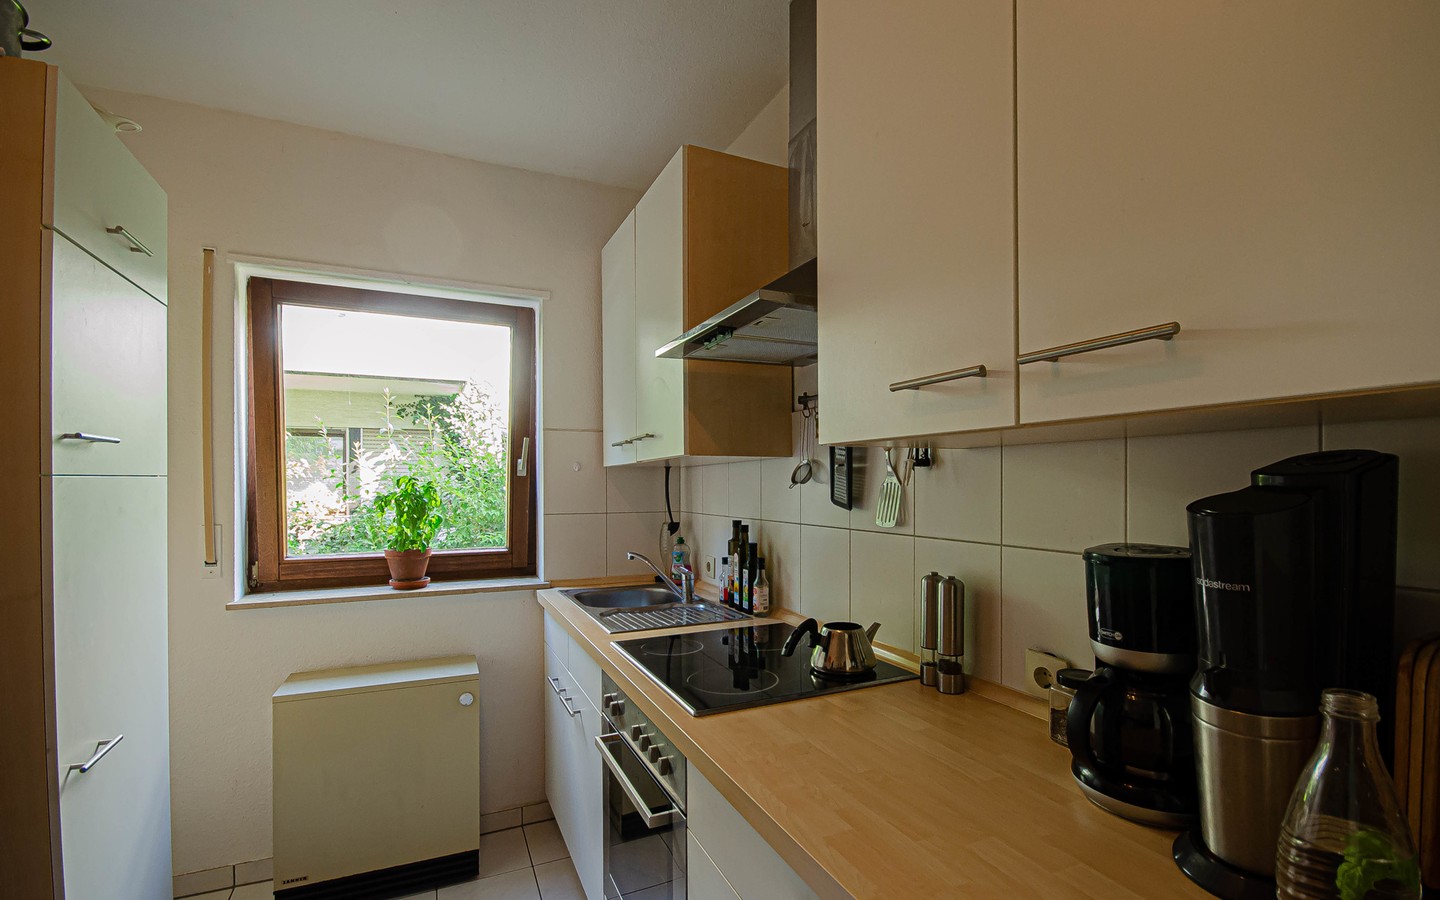 Küche - Dossenheim: Gemütliche Zweizimmerwohnung in ruhiger Hanglage